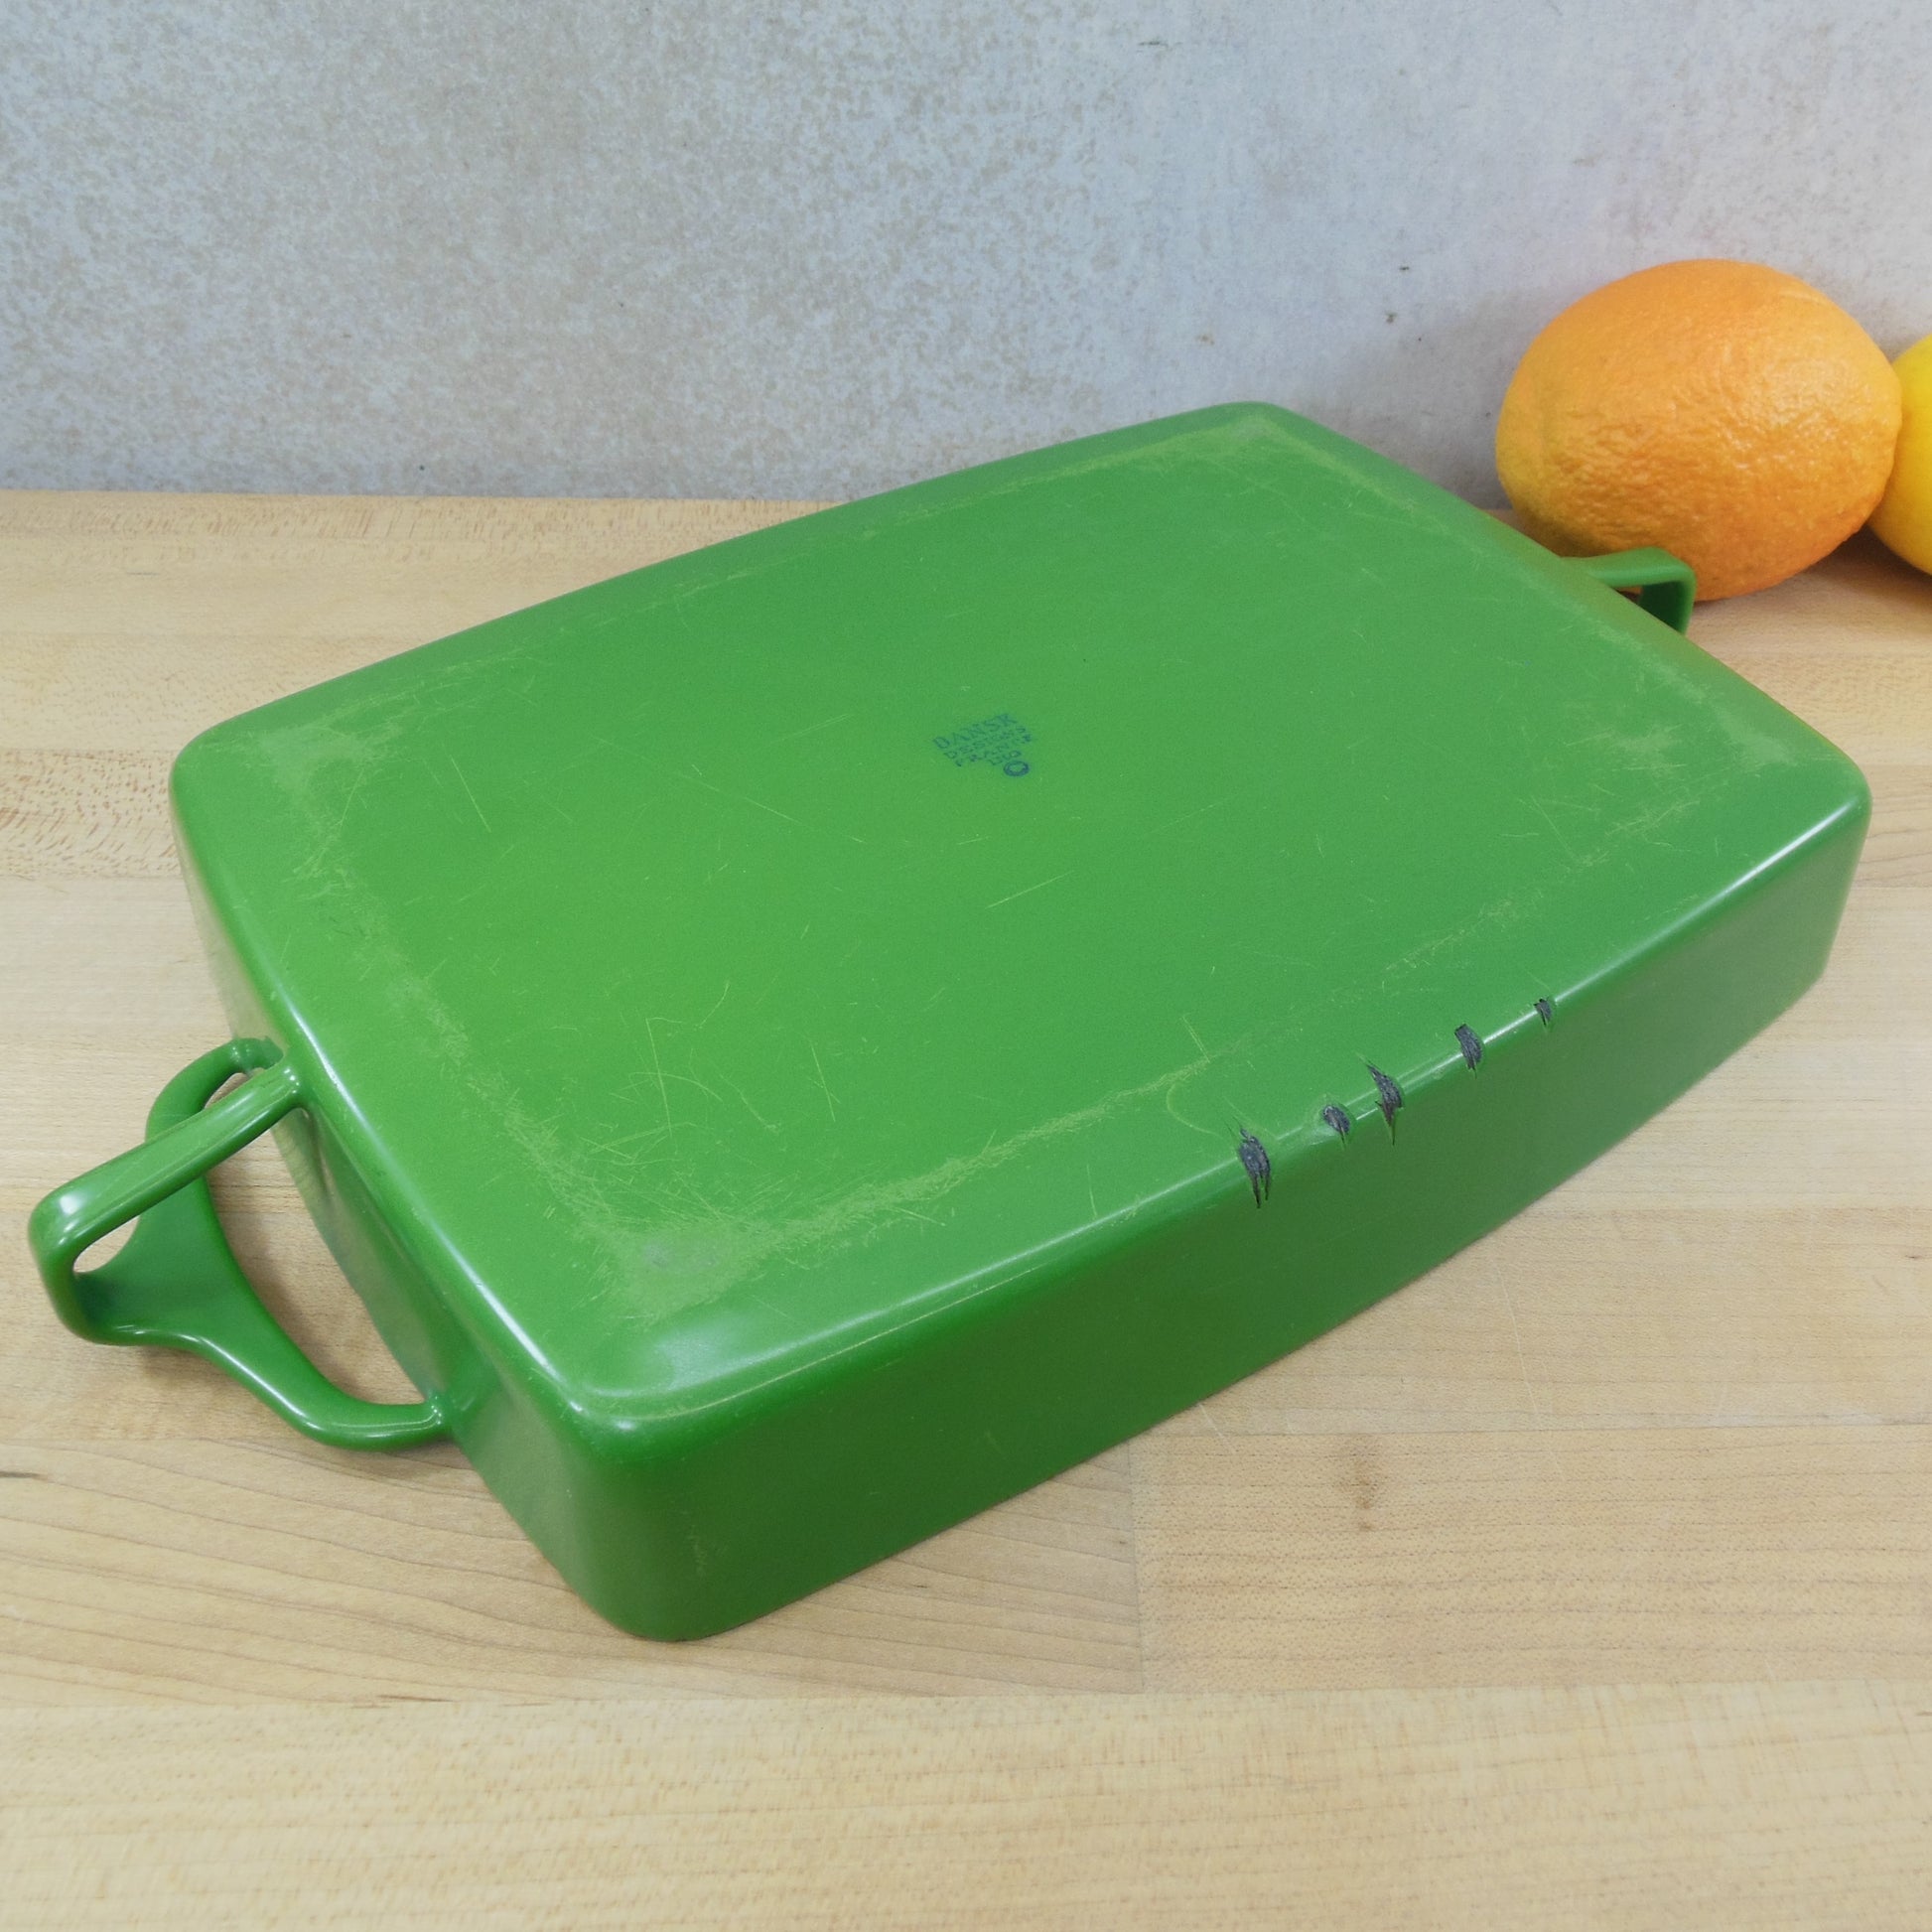 Dansk France Enamelware Green Small 8x11 Casserole Baking Pan - Kobenstyle discounted